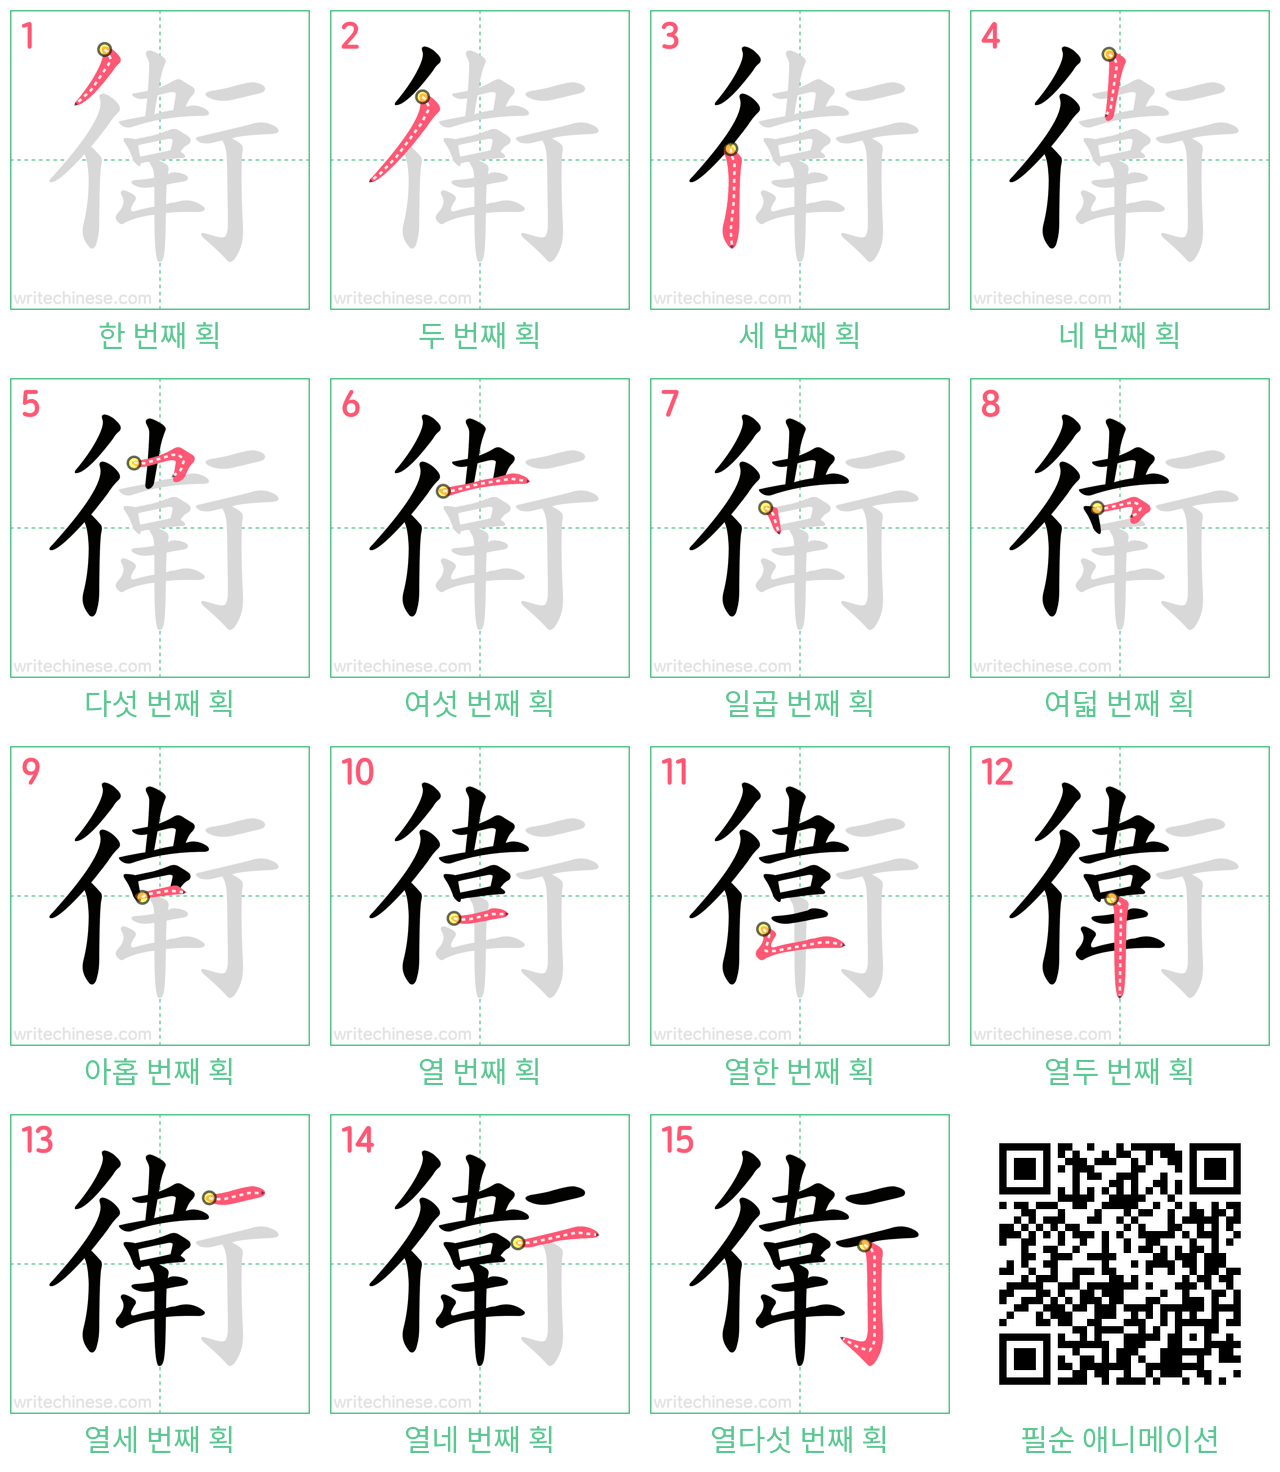 衛 step-by-step stroke order diagrams